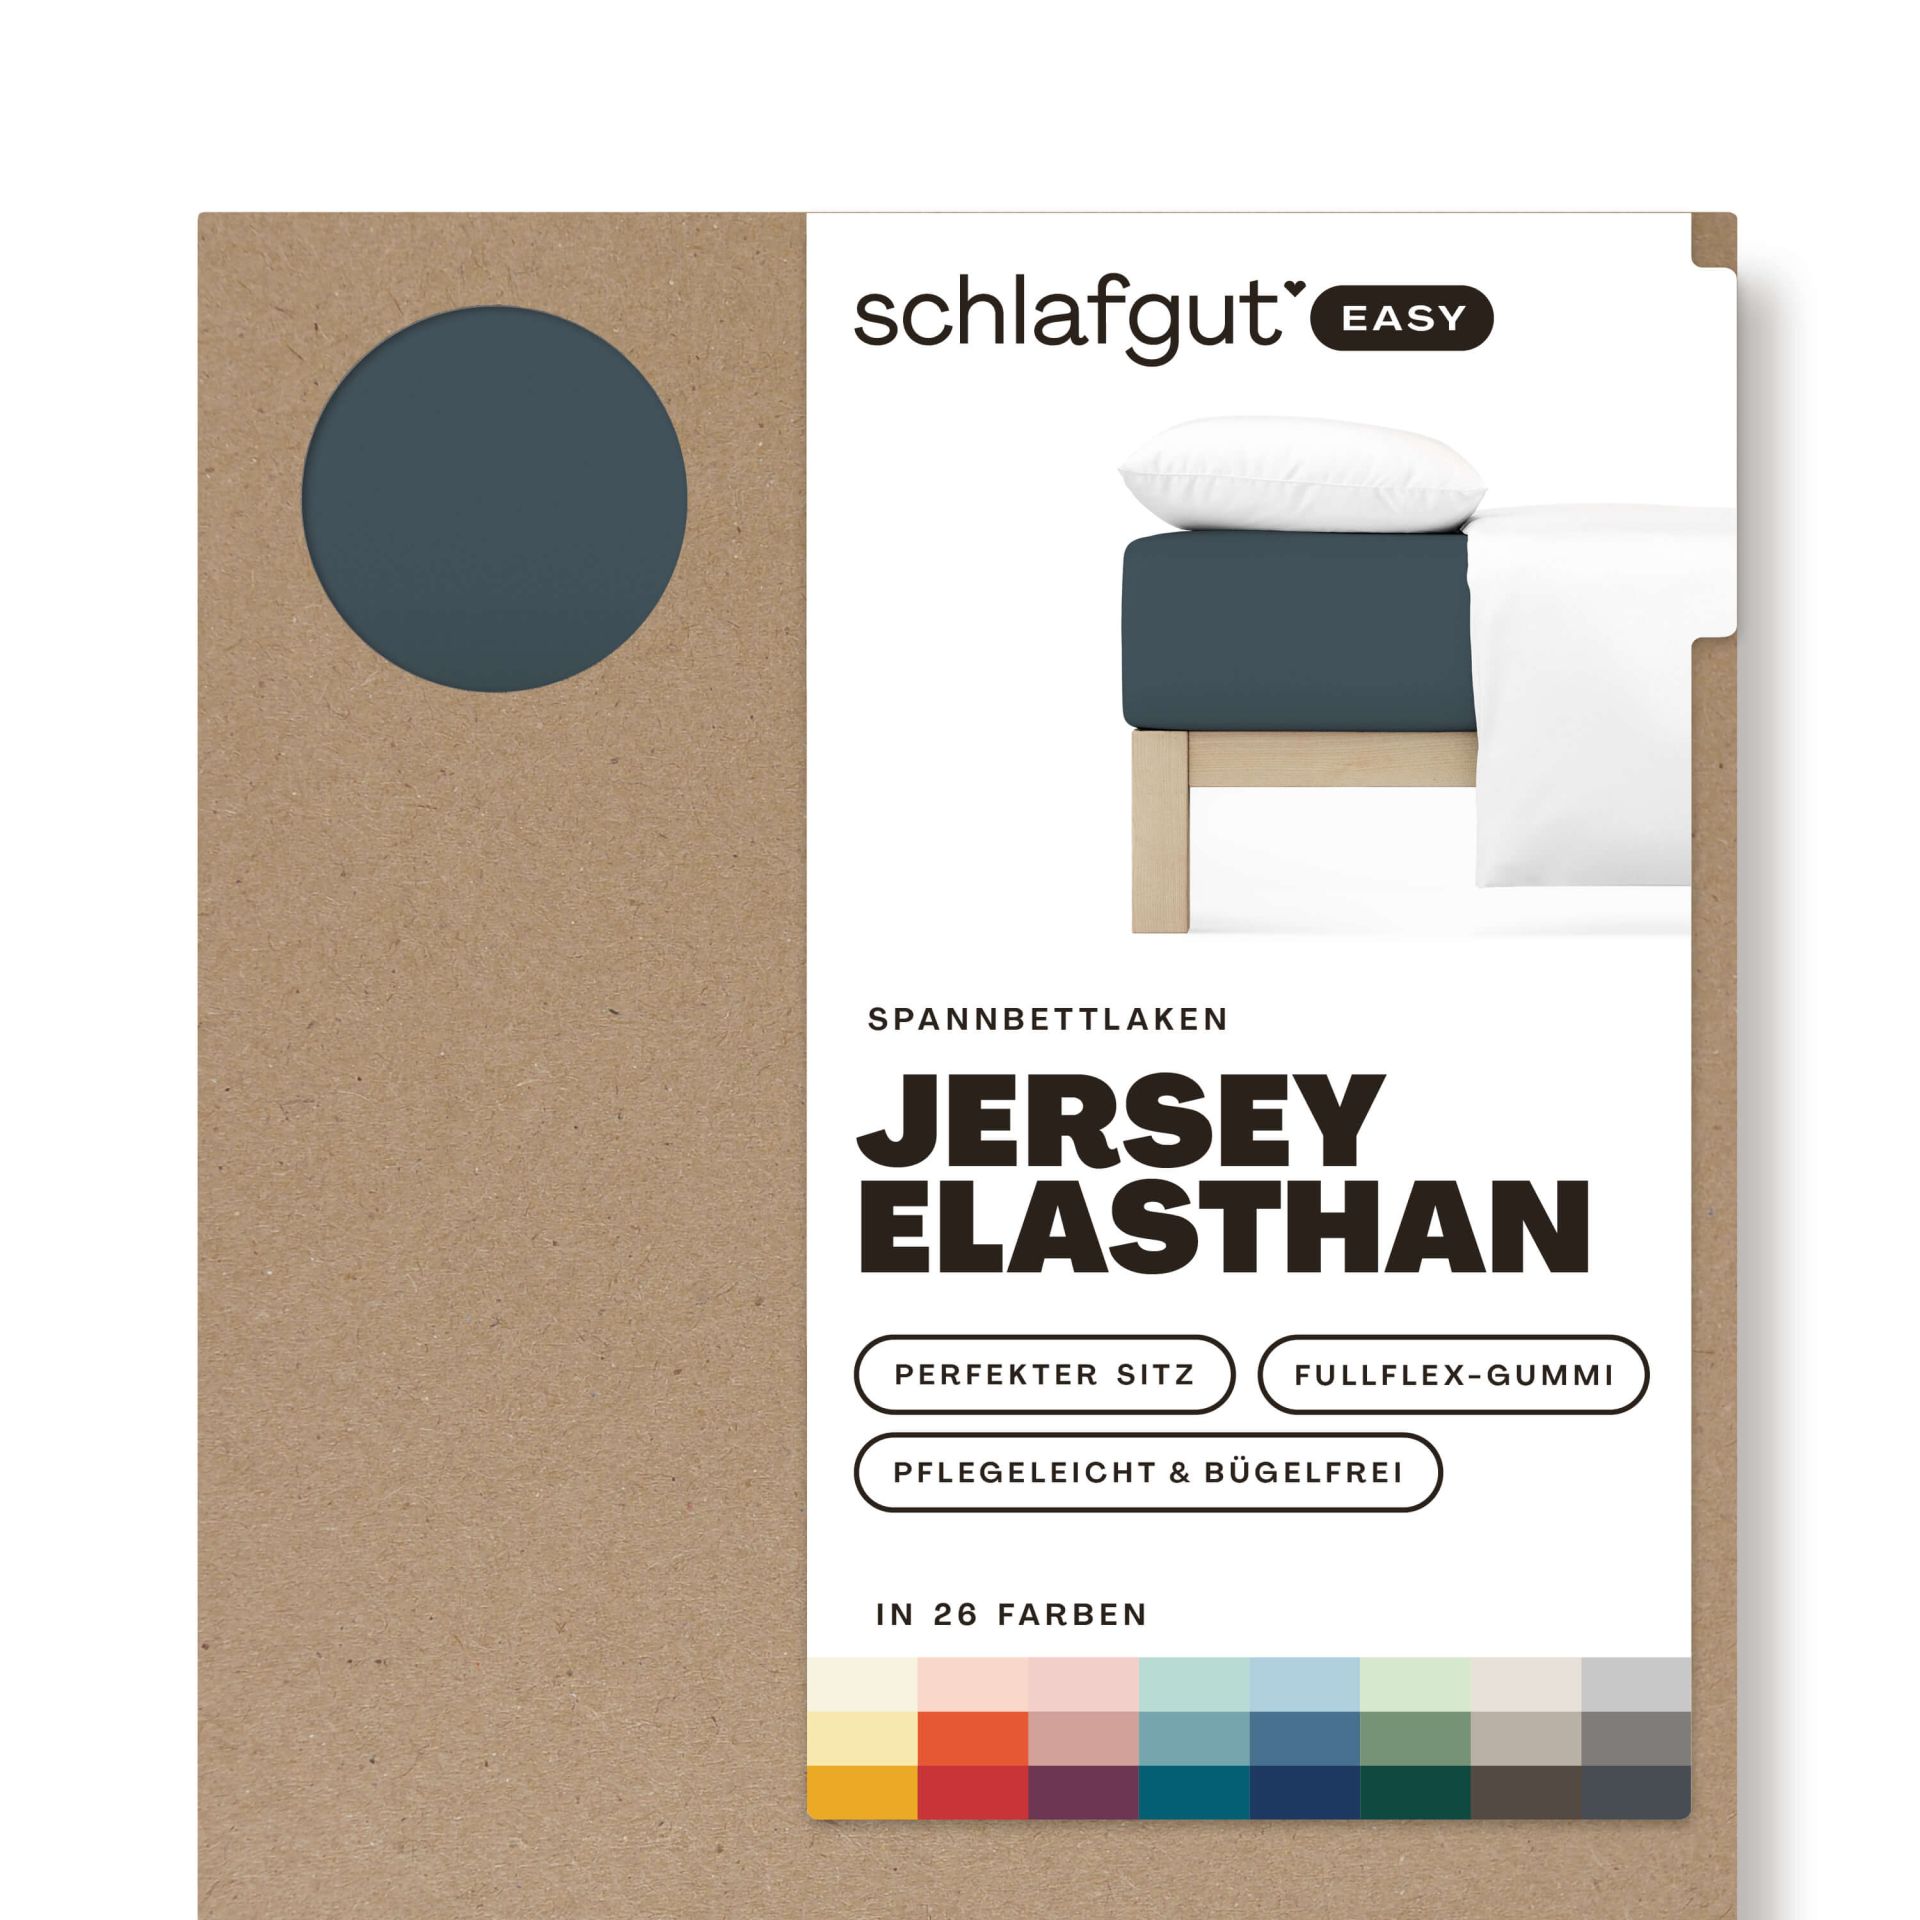 Das Produktbild vom Spannbettlaken der Reihe Easy Elasthan in Farbe grey deep von Schlafgut